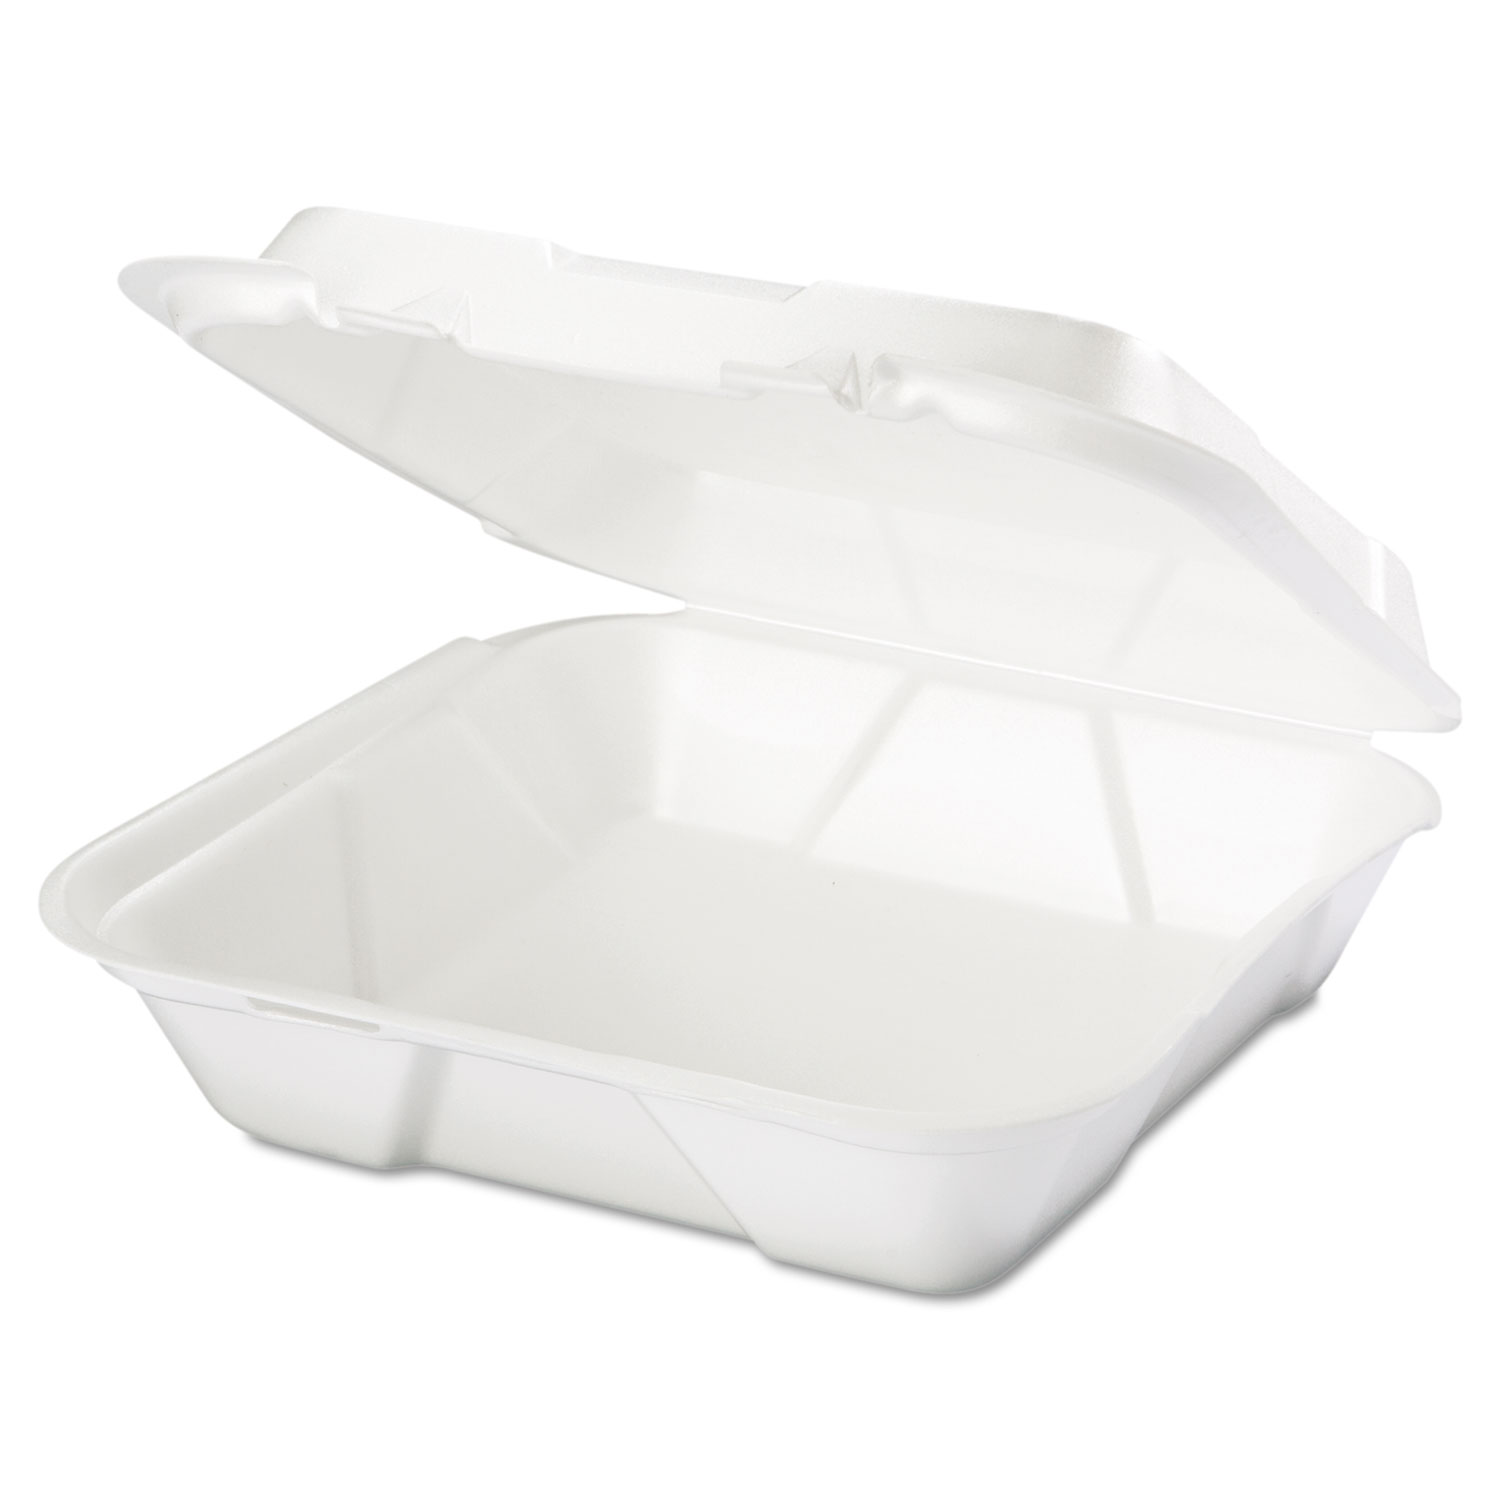 Genpak Squat Paper Portion Cup .75oz White 250/bag 20 Bags/carton F075 for sale online 